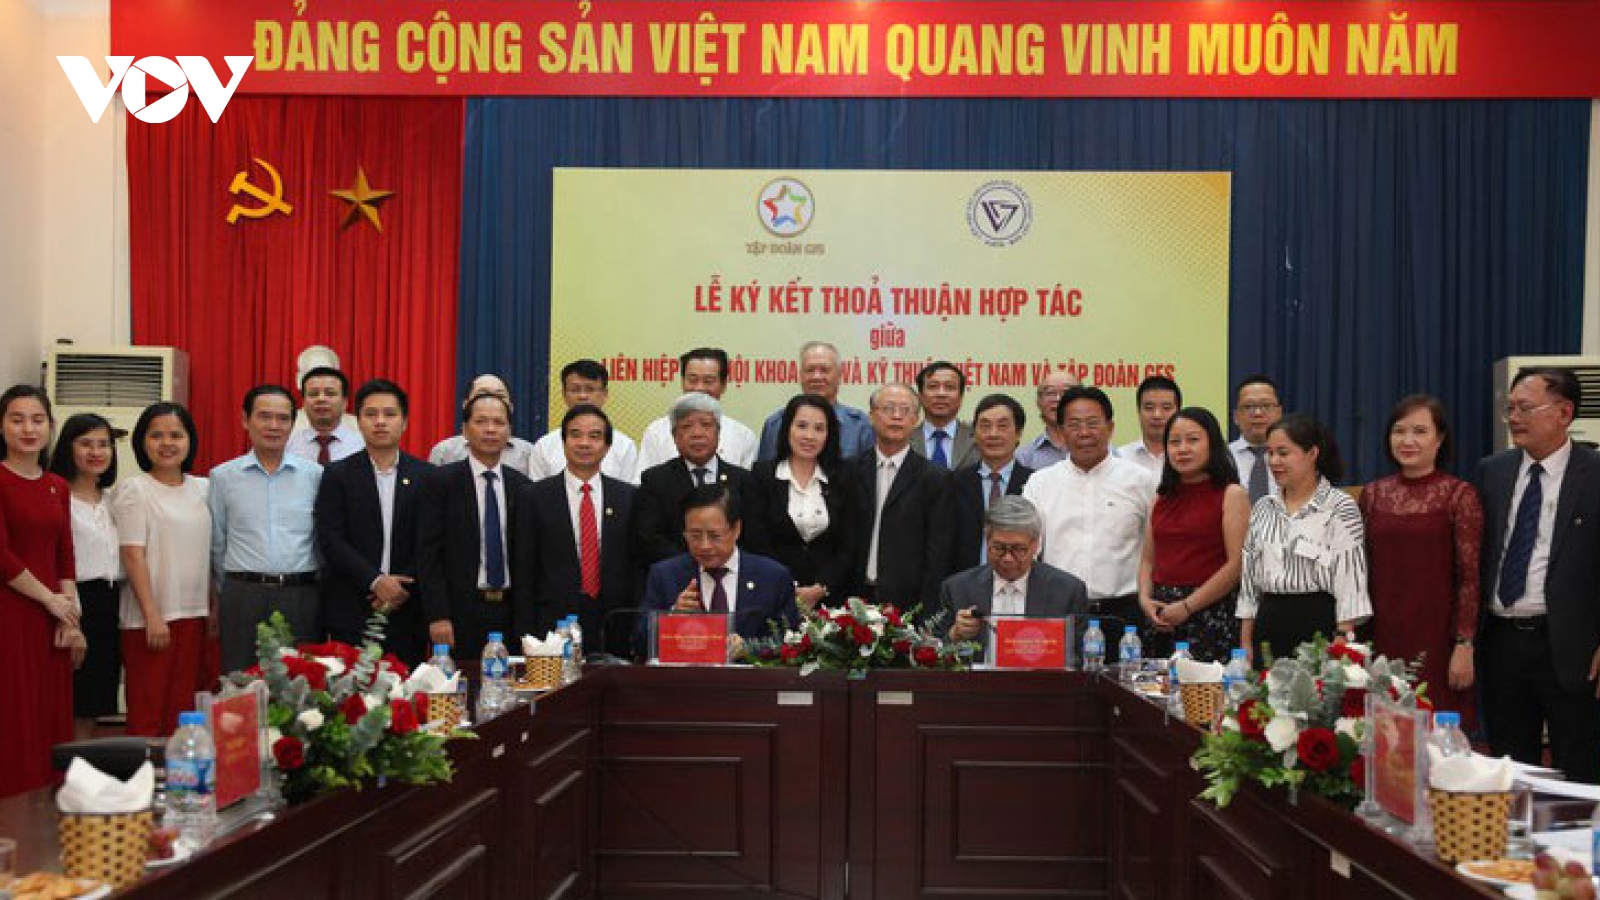 GFS và Liên hiệp các Hội Khoa học Kỹ thuật Việt Nam: Hợp tác để đưa trí tuệ Việt vươn xa